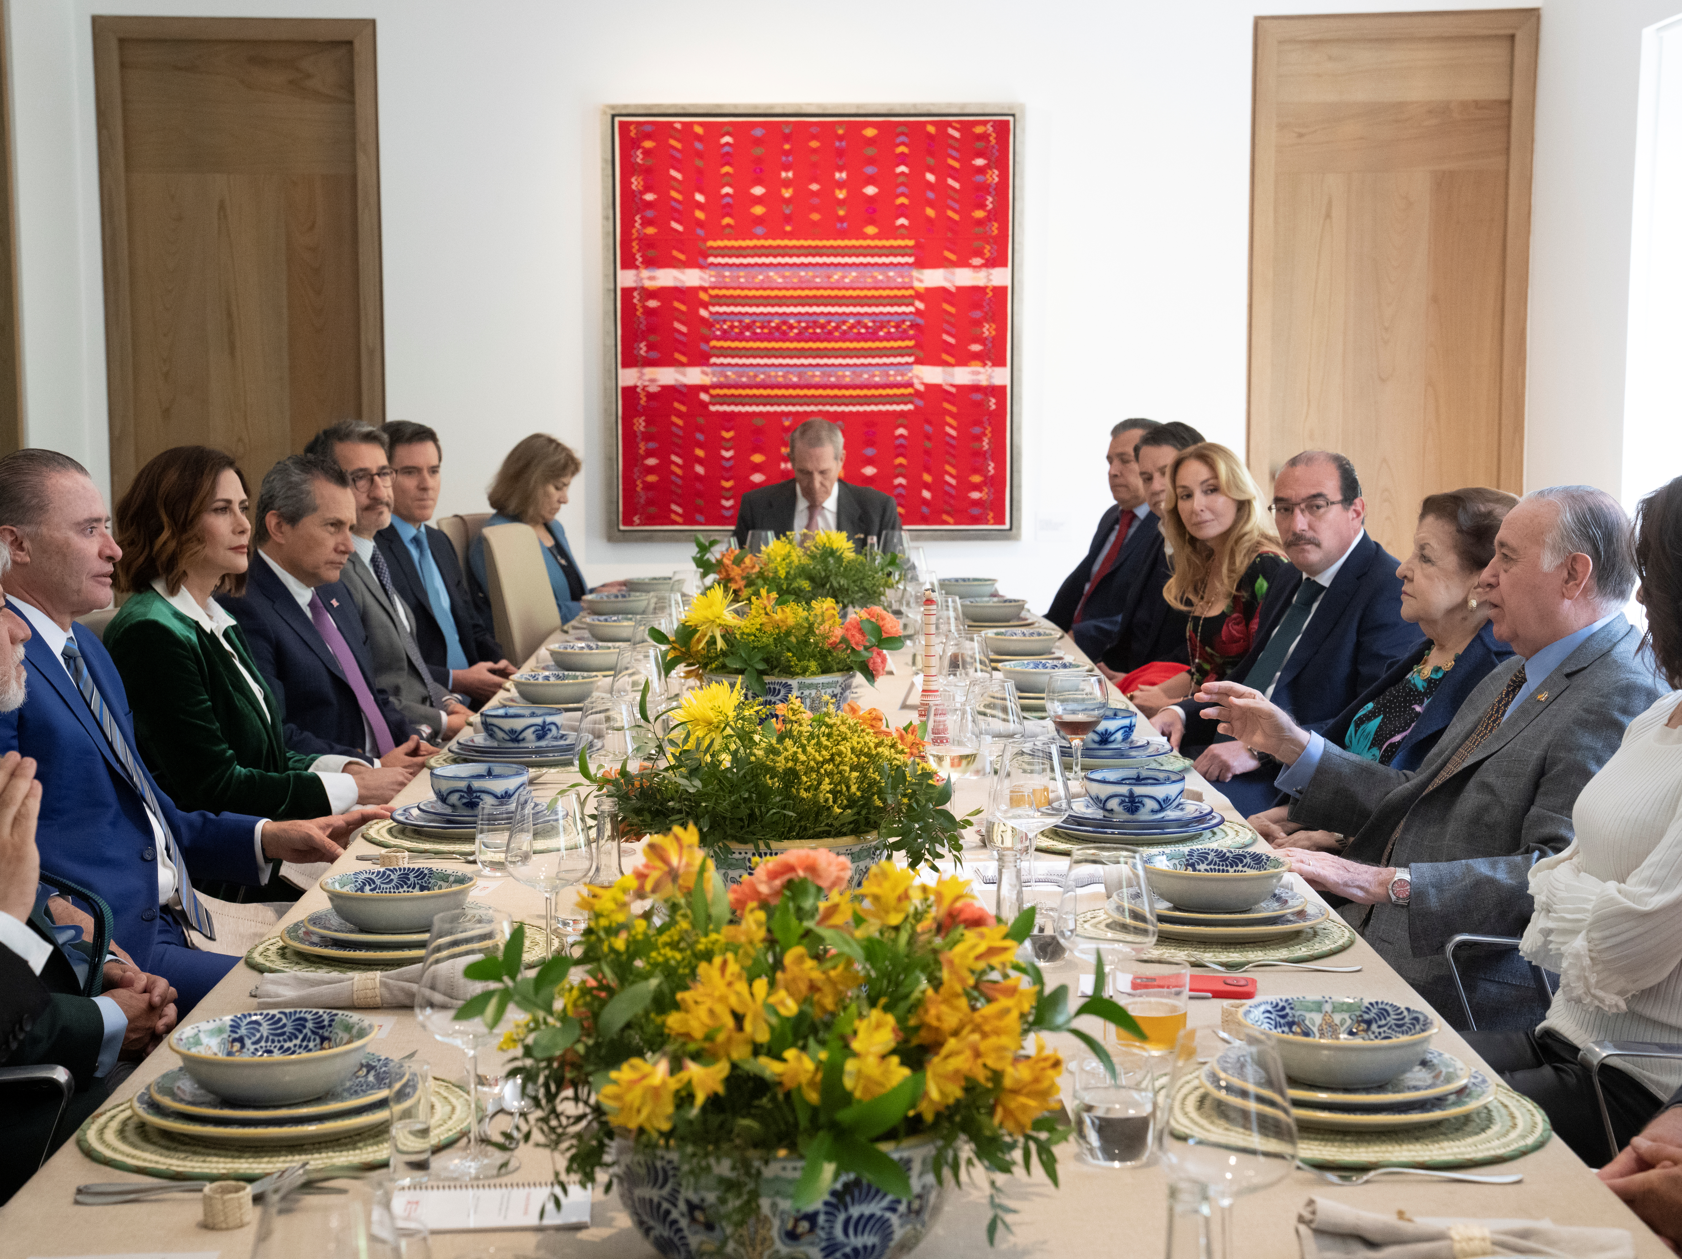 Bienvenida al embajador de México en España, don Quirino Ordaz